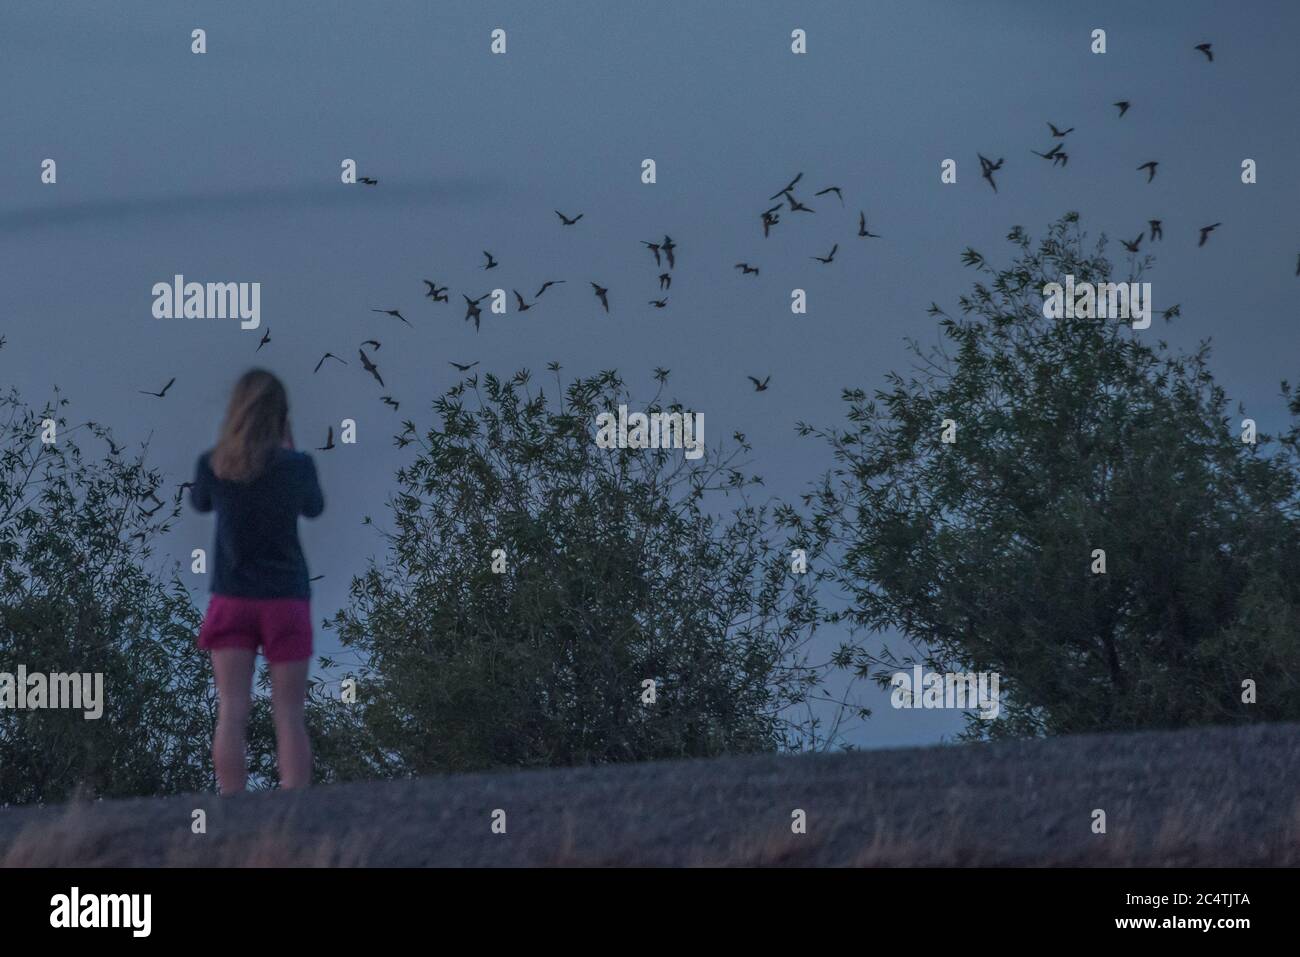 Una persona guarda i pipistrelli messicani dalla coda libera che volano sulla strada rialzata yolo vicino a Sacramento, California, dove risiede una colonia enorme di pipistrelli. Foto Stock